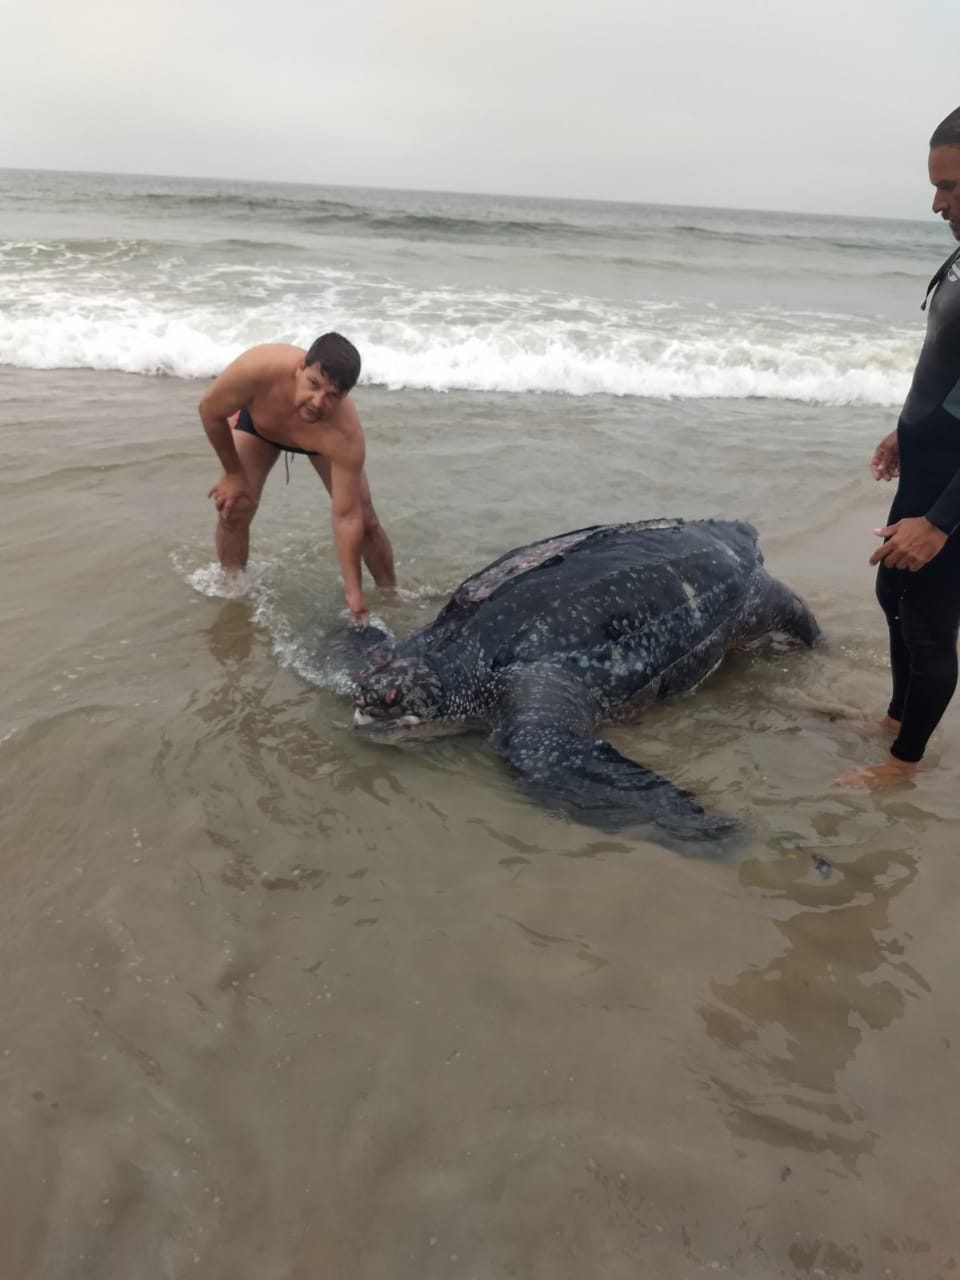  Tartaruga pesando 300 quilos é encontrada morta no litoral do Paraná